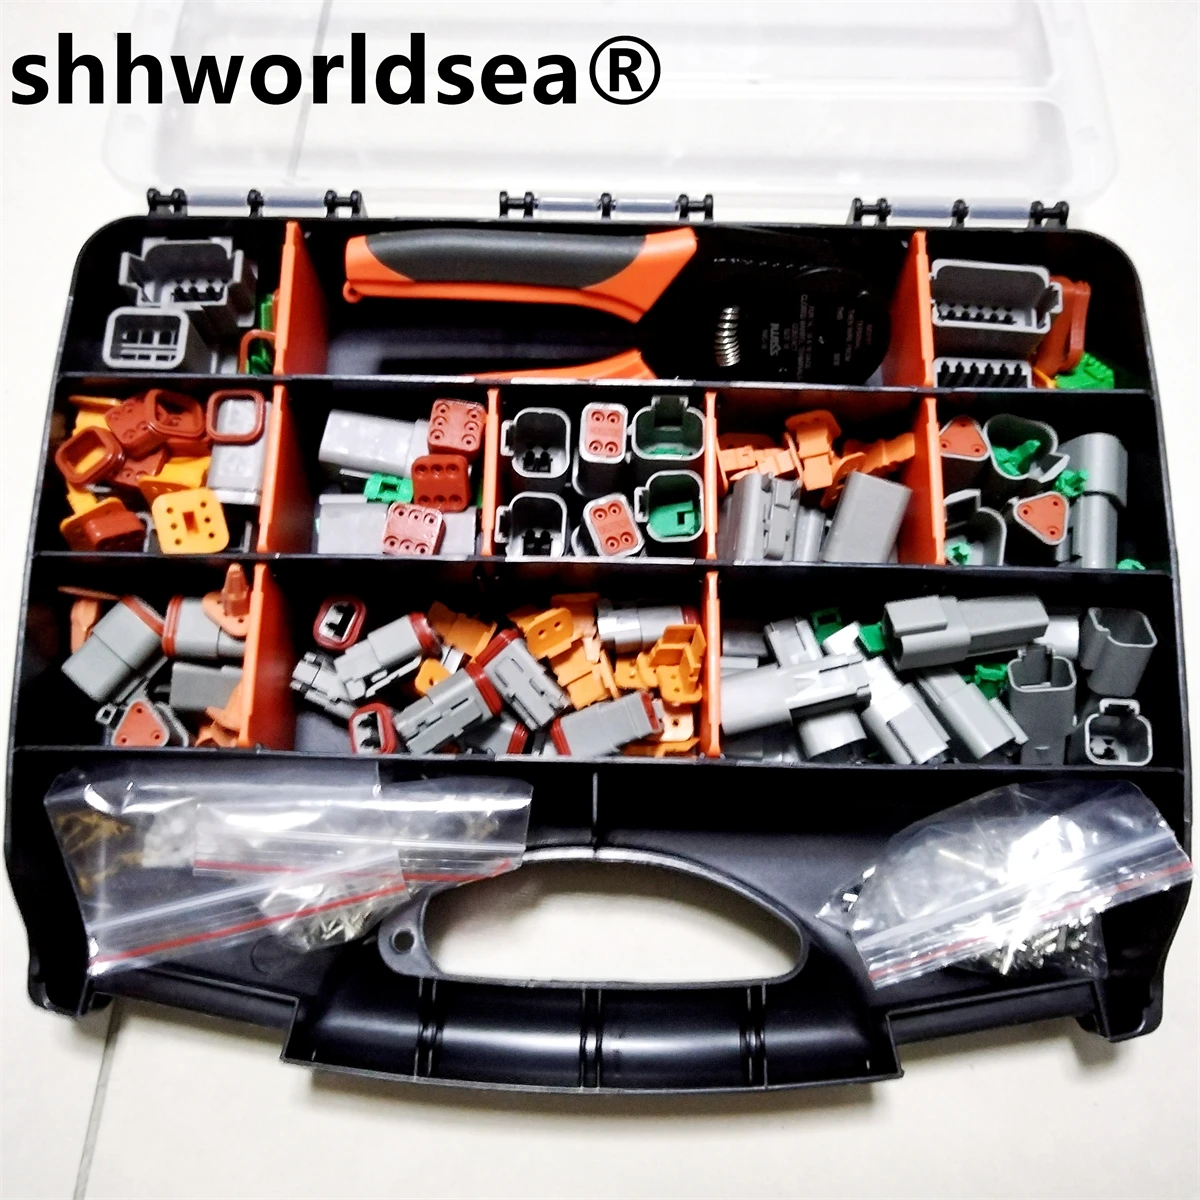 shhworldsea Водонепроницаемый комплект разъемов серии DT Ремонтный ящик для инструментов DT06-2 / 3 / 4 / 6 / 8 / 12S DT04-2 / 3 / 4 / 6 / 8 / 12P с терминалом